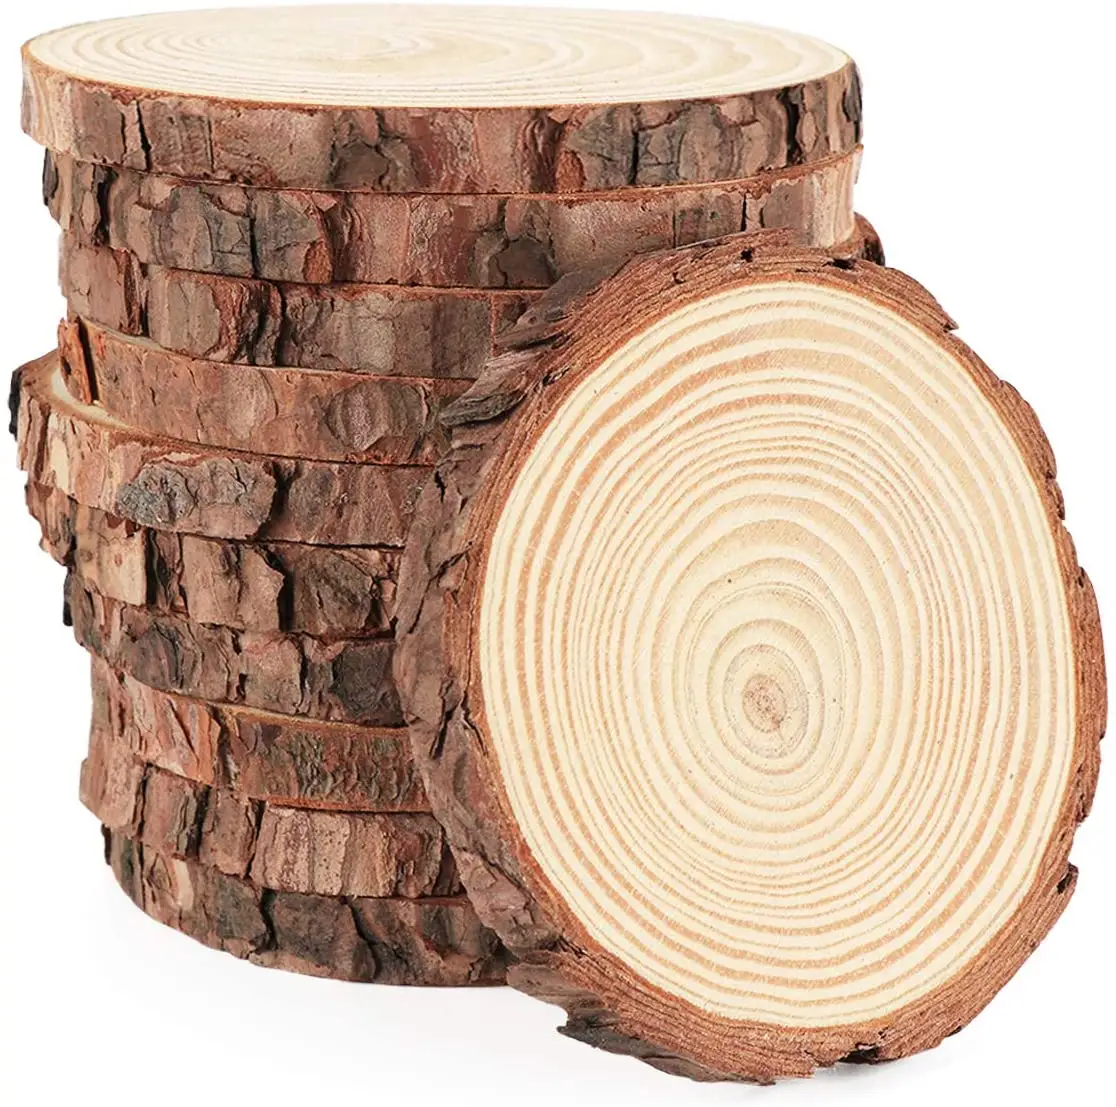 Tondi di legno non finiti all'ingrosso lastra addensata naturale con portacandele in legno di pino corteccia